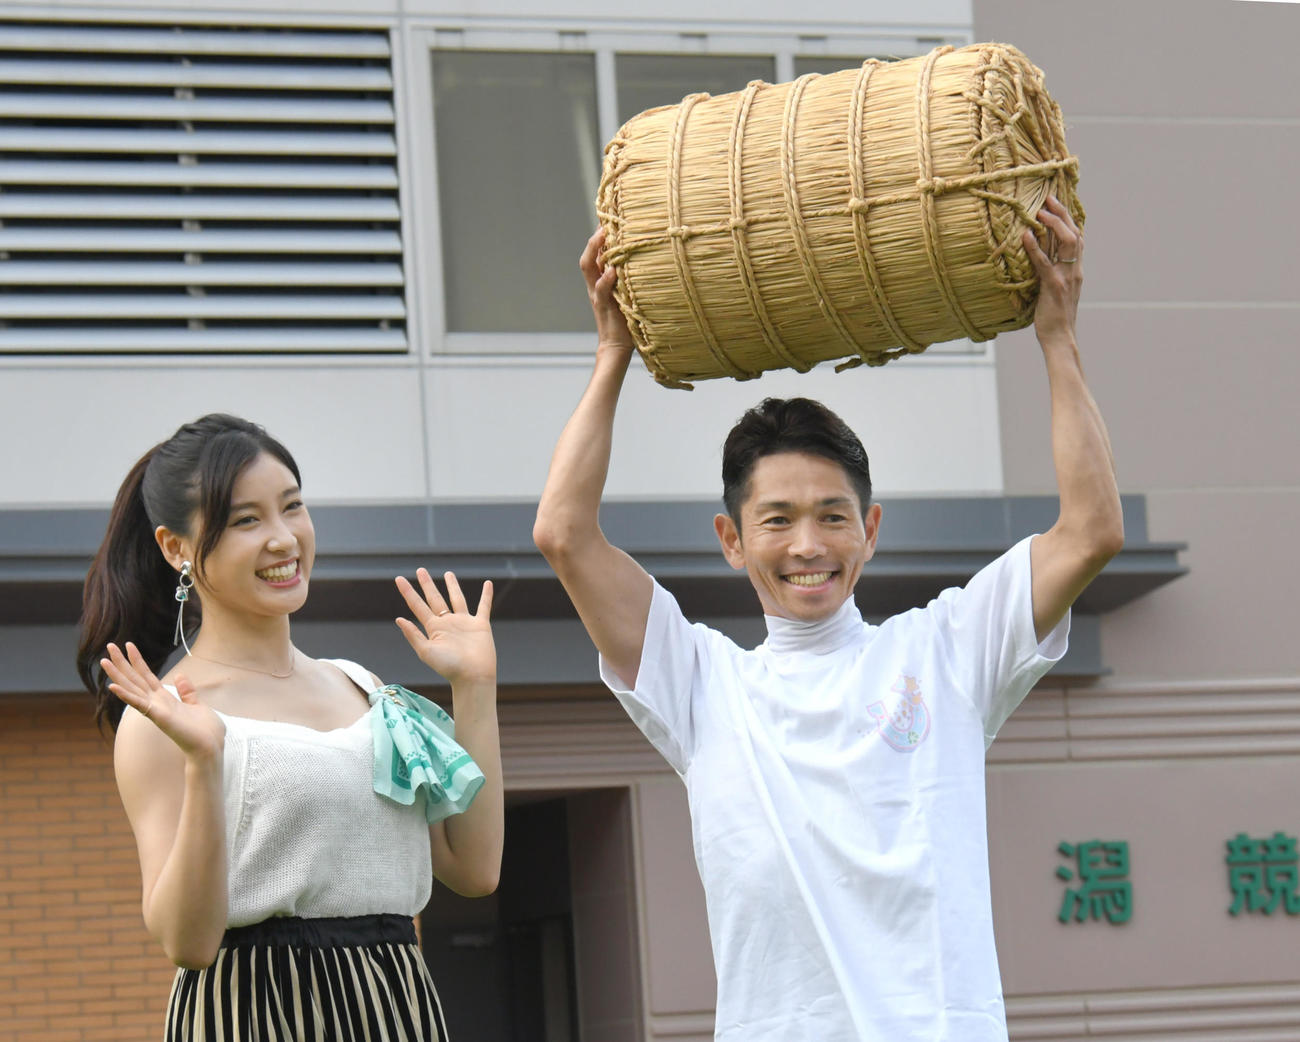 19年、夏の新潟リーディングジョッキーに輝いた戸崎騎手は副賞のお米を手にニッコリ。左は土屋太鳳